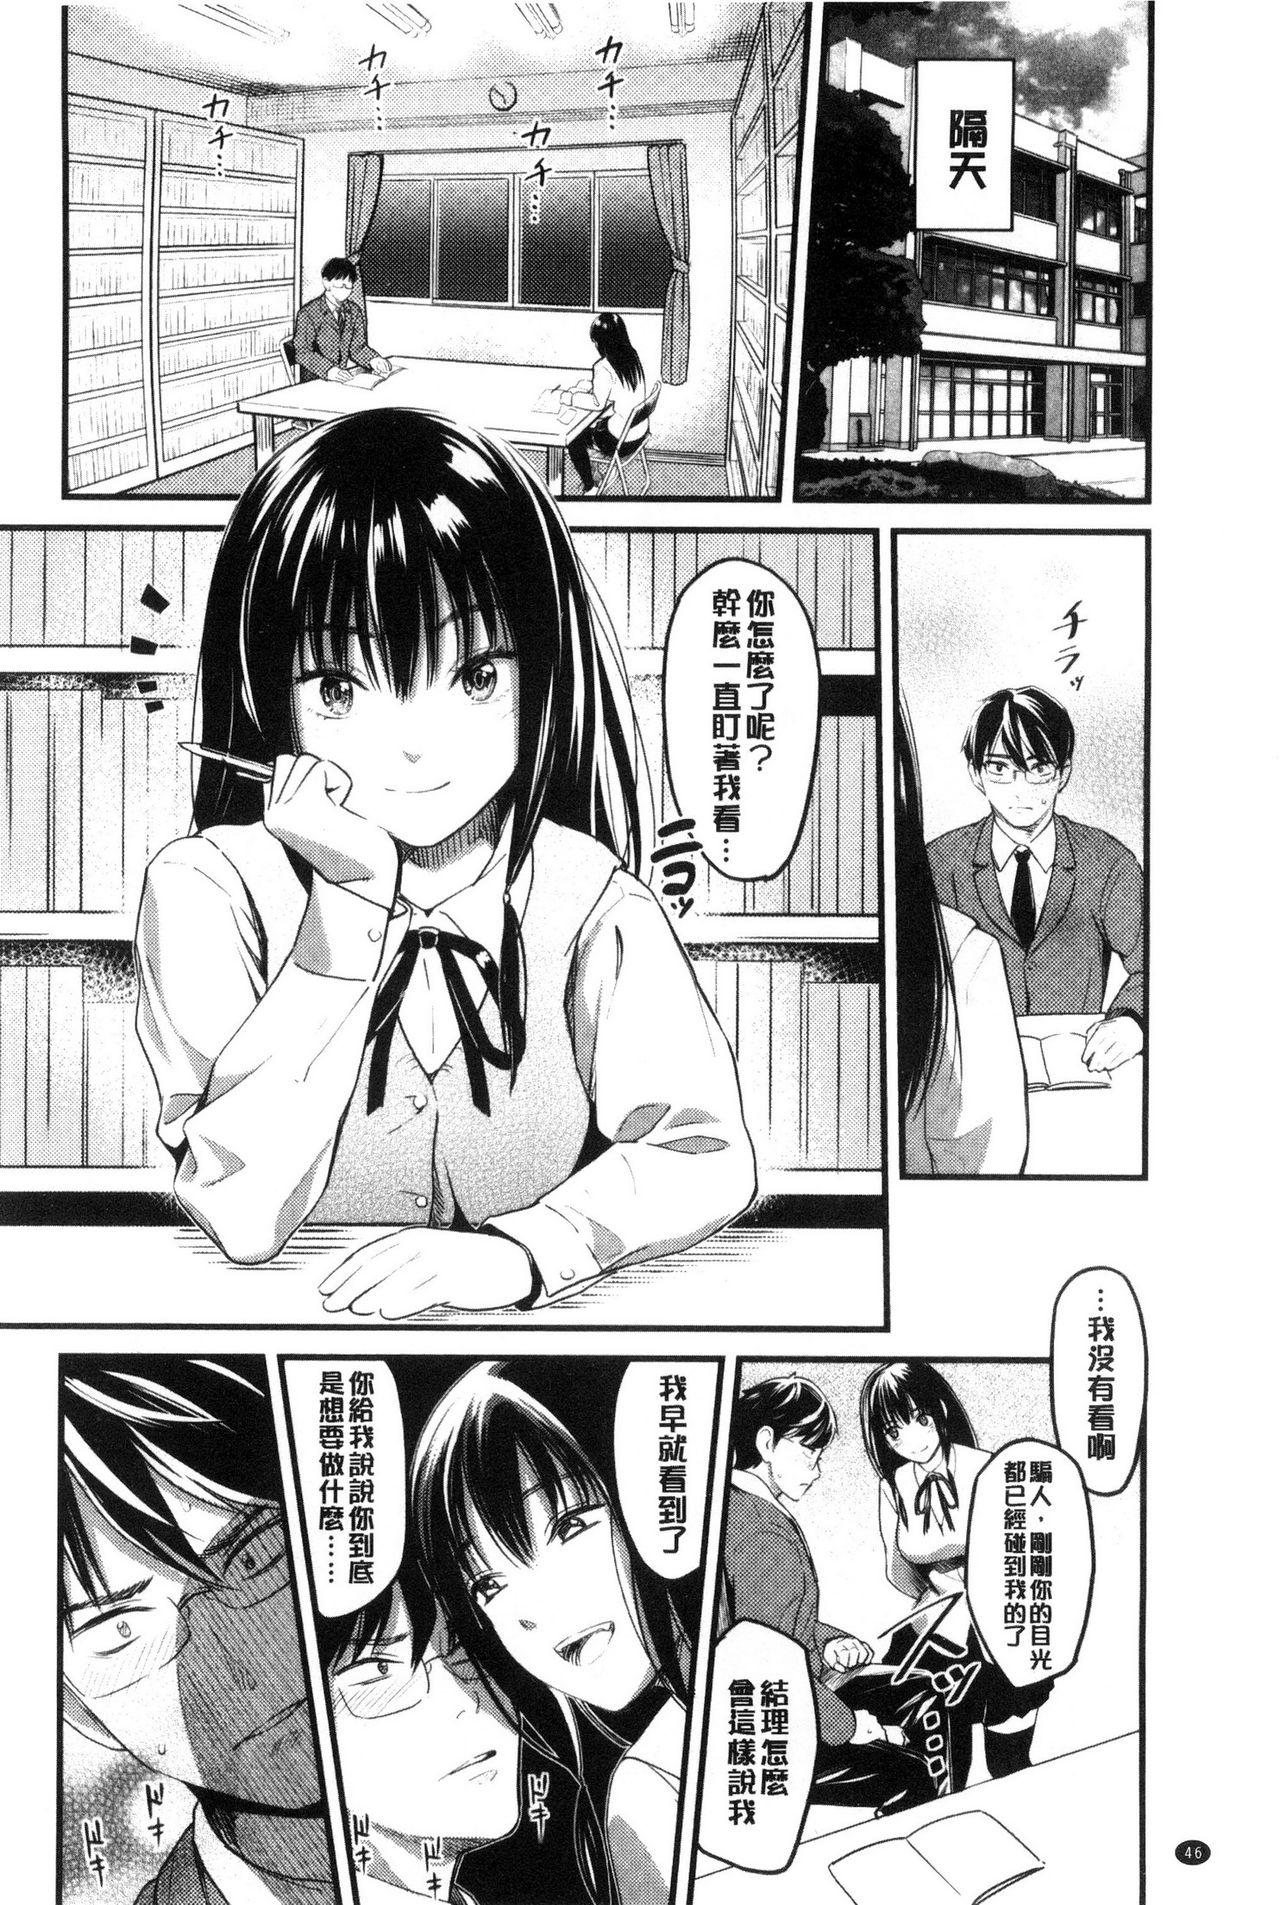 Seifuku no Mama Aishinasai! - Love in school uniform 47